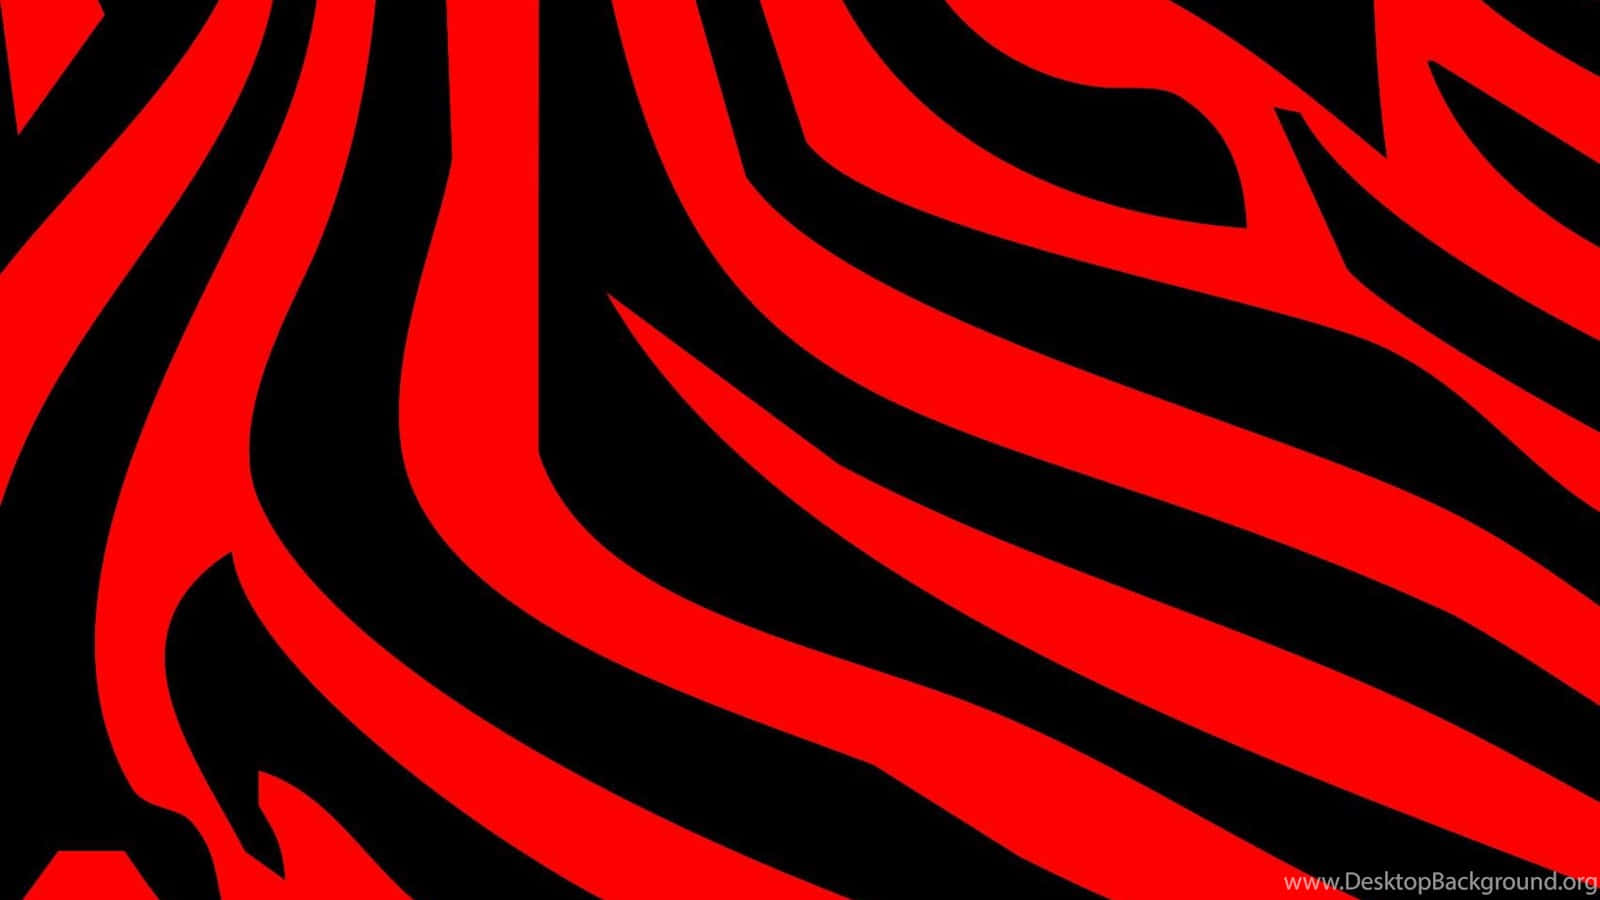 Unfondo De Pantalla Con Estampado De Cebra En Rojo Y Negro. Fondo de pantalla